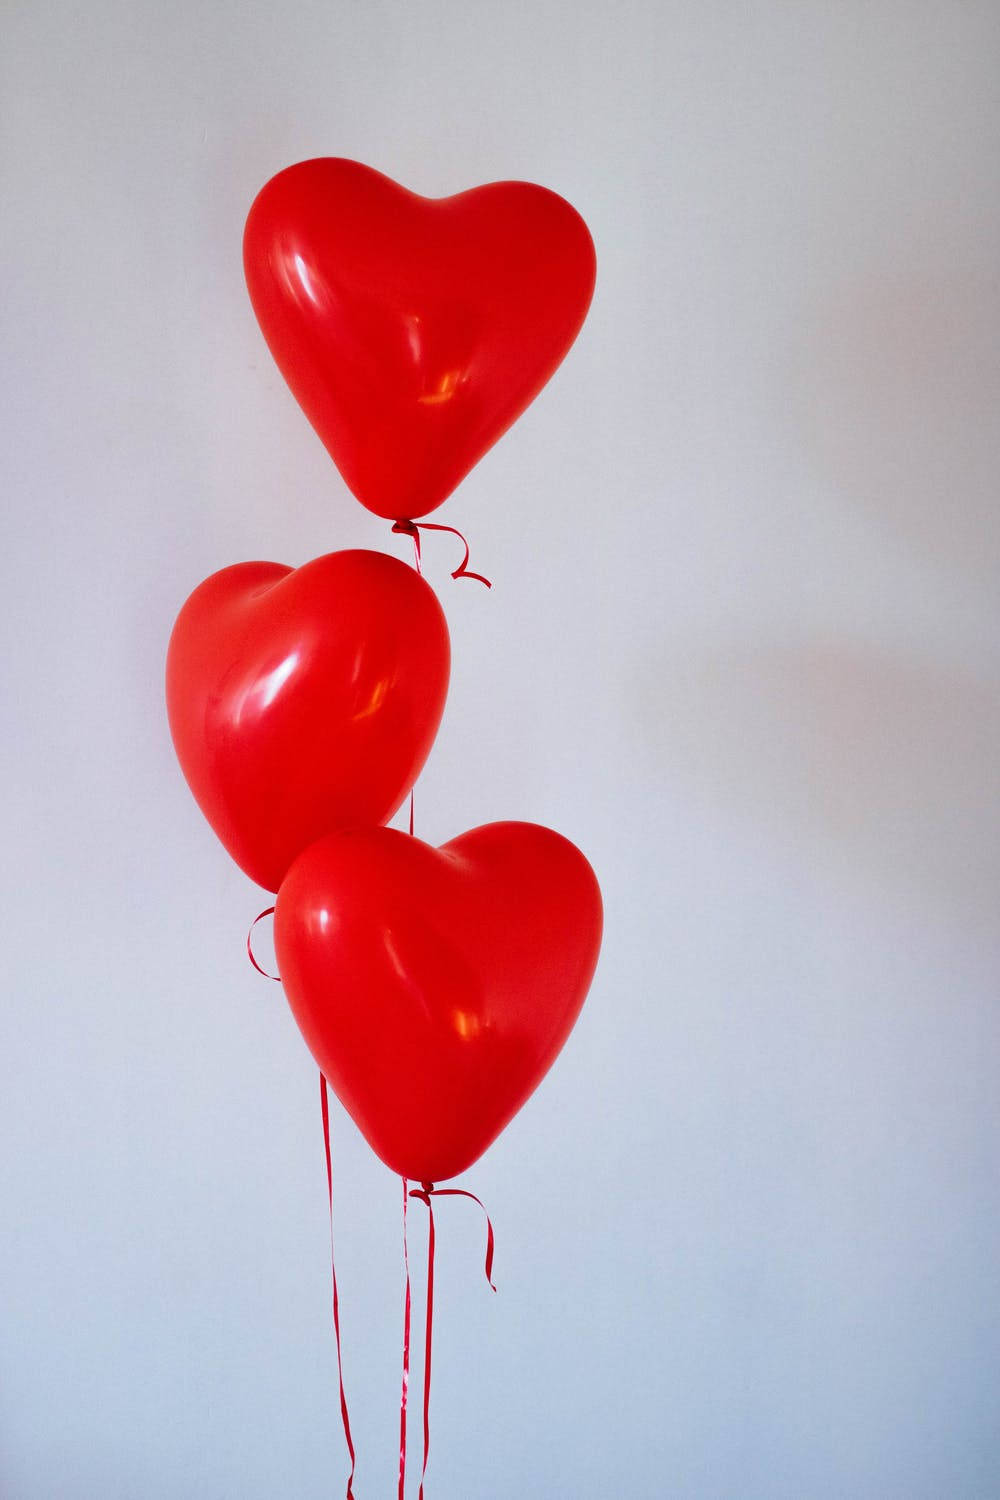 Heart Aesthetic Red Balloons Wallpaper